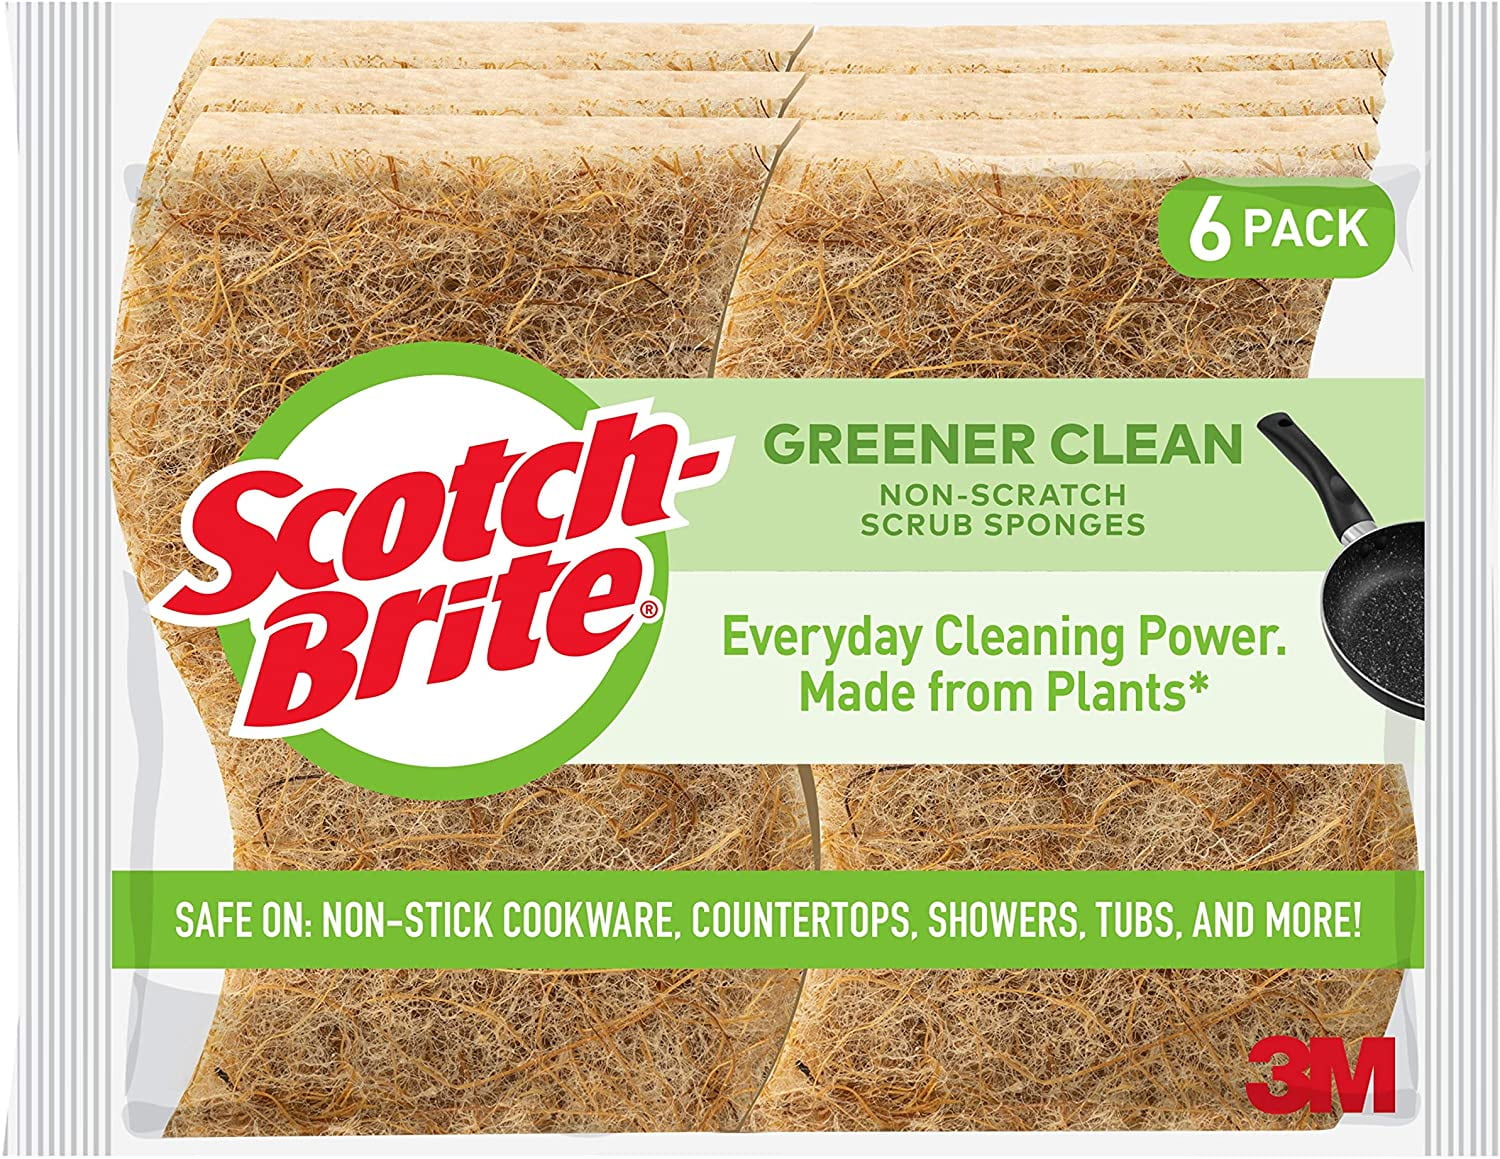 2 Pack 6 Count Scotch-Brite Greener Clean Non-Scratch Scrub Sponges